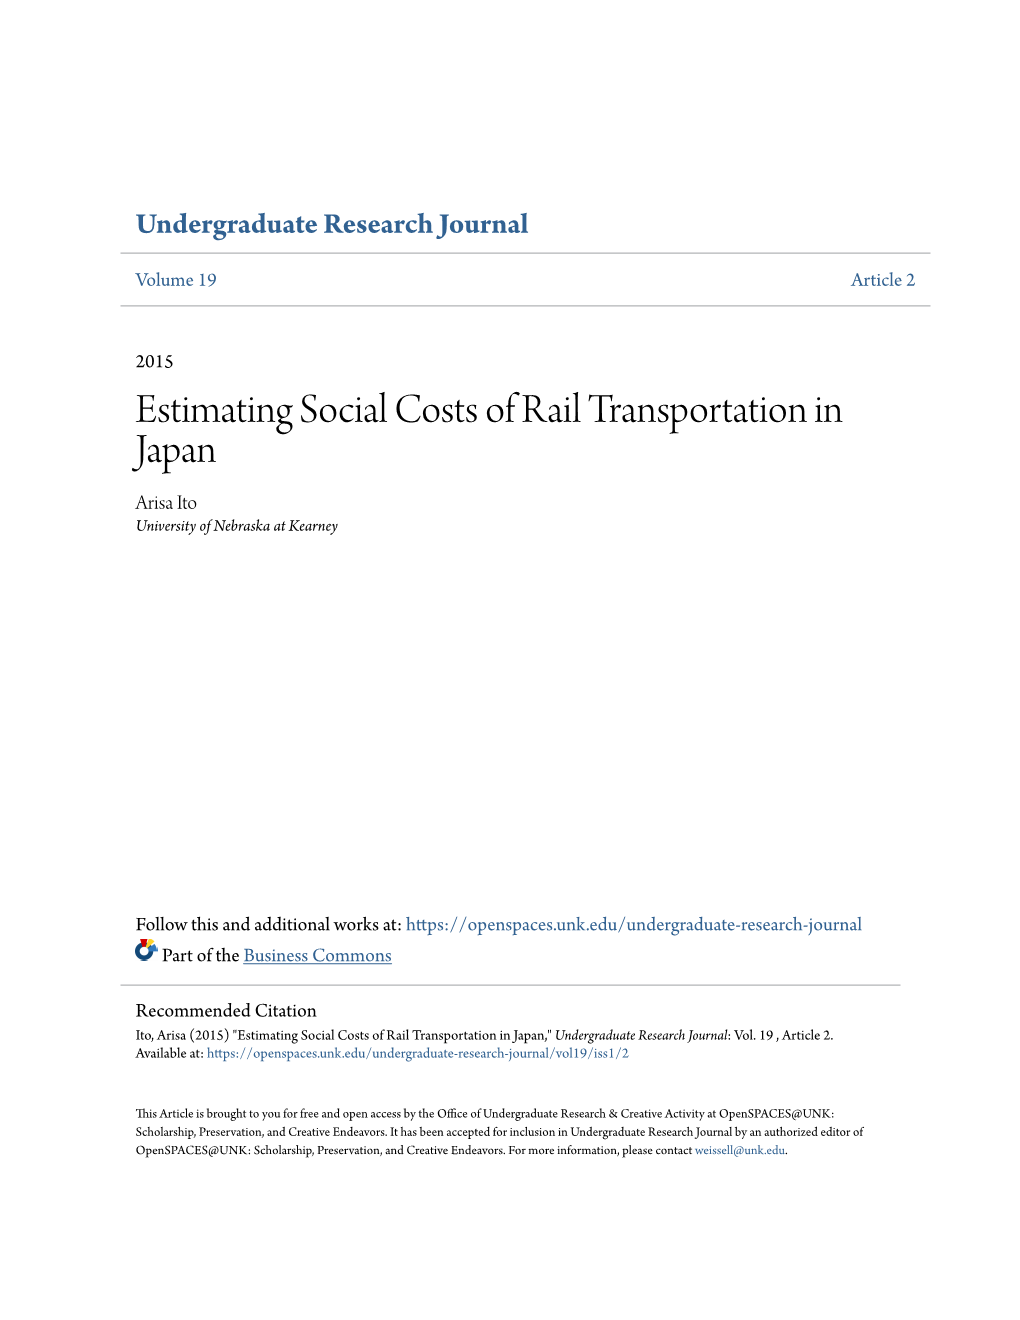 Estimating Social Costs of Rail Transportation in Japan Arisa Ito University of Nebraska at Kearney